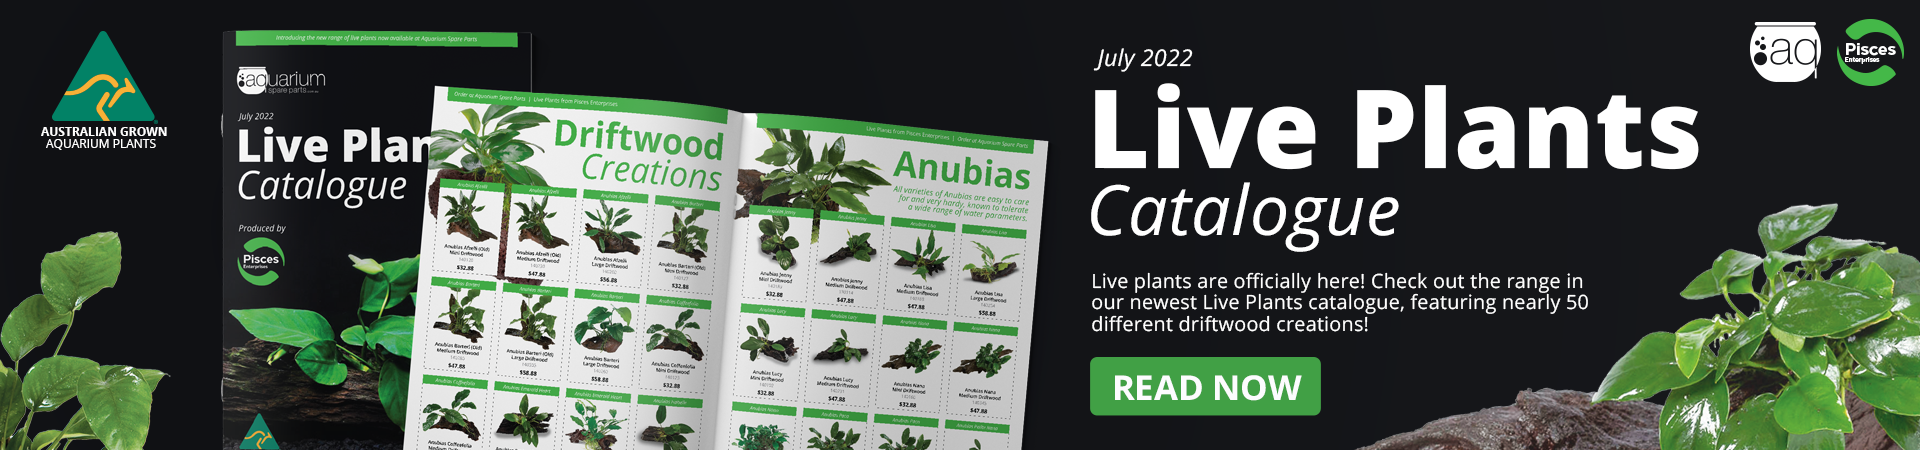 live-plants-web-banner-announcement.png